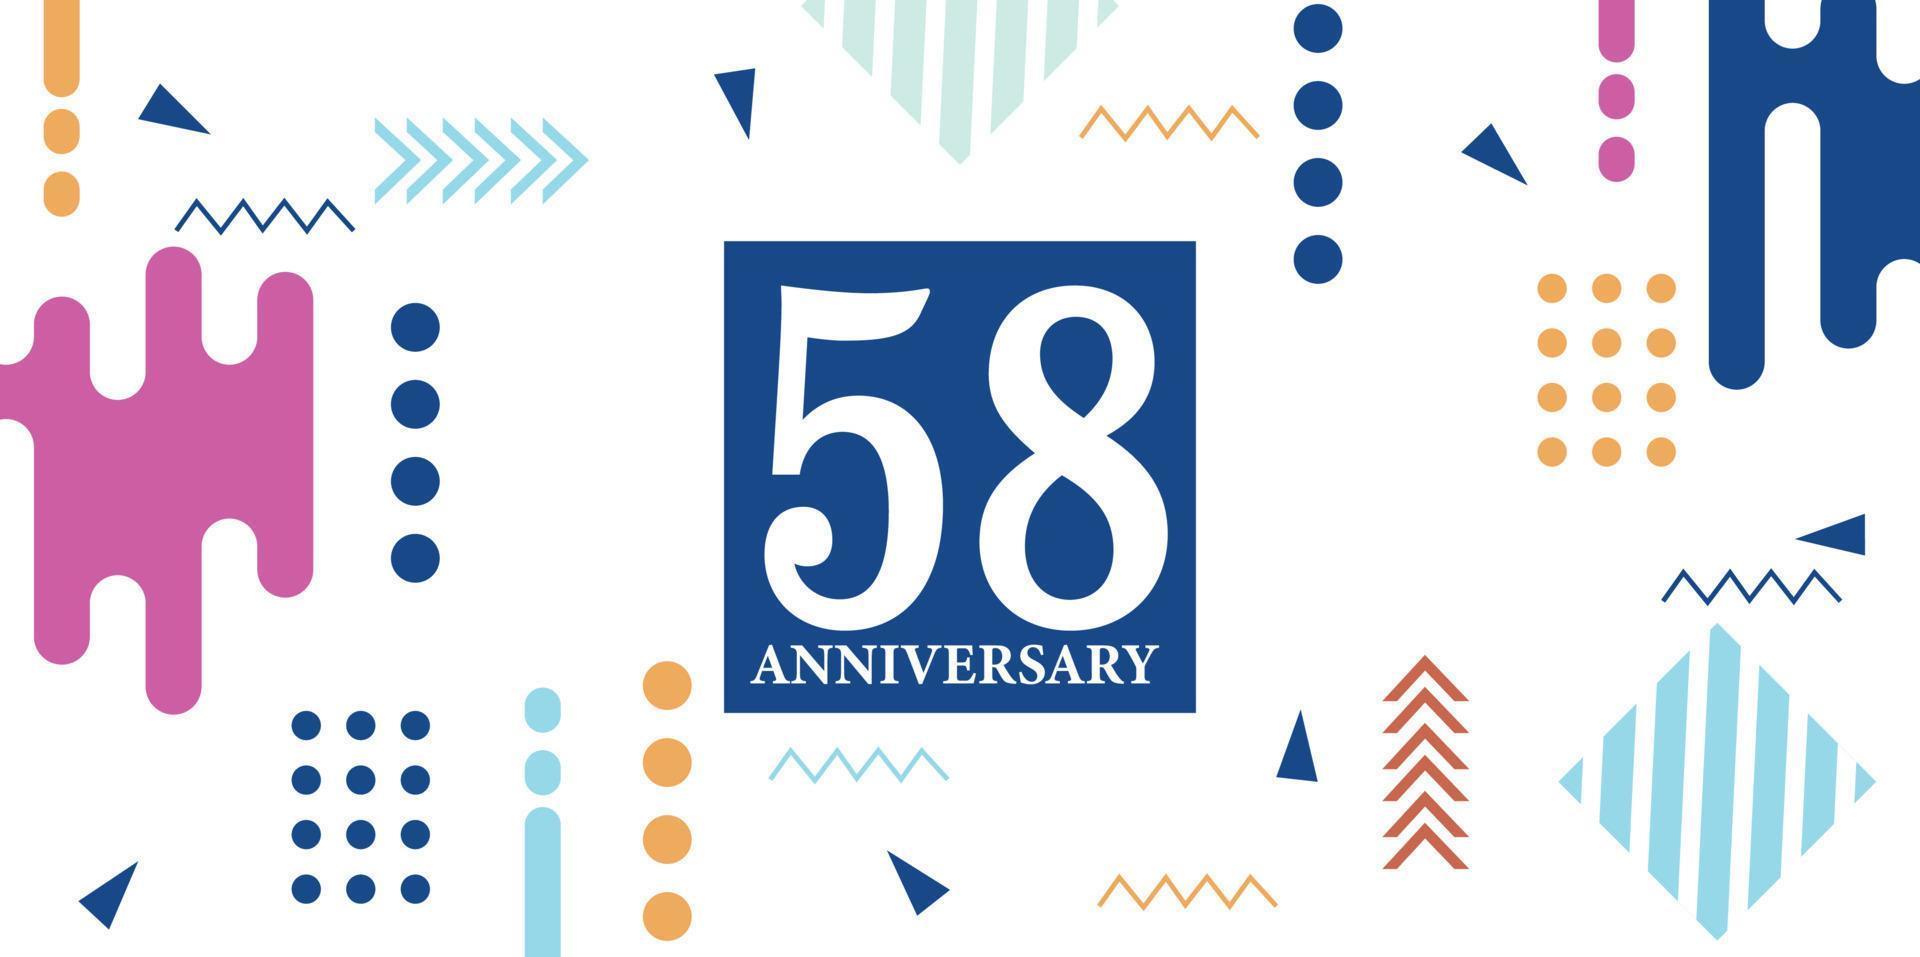 58 Jahre Jahrestag Feier Logo Weiß Zahlen Schriftart im Blau gestalten mit bunt abstrakt Design auf Weiß Hintergrund Vektor Illustration